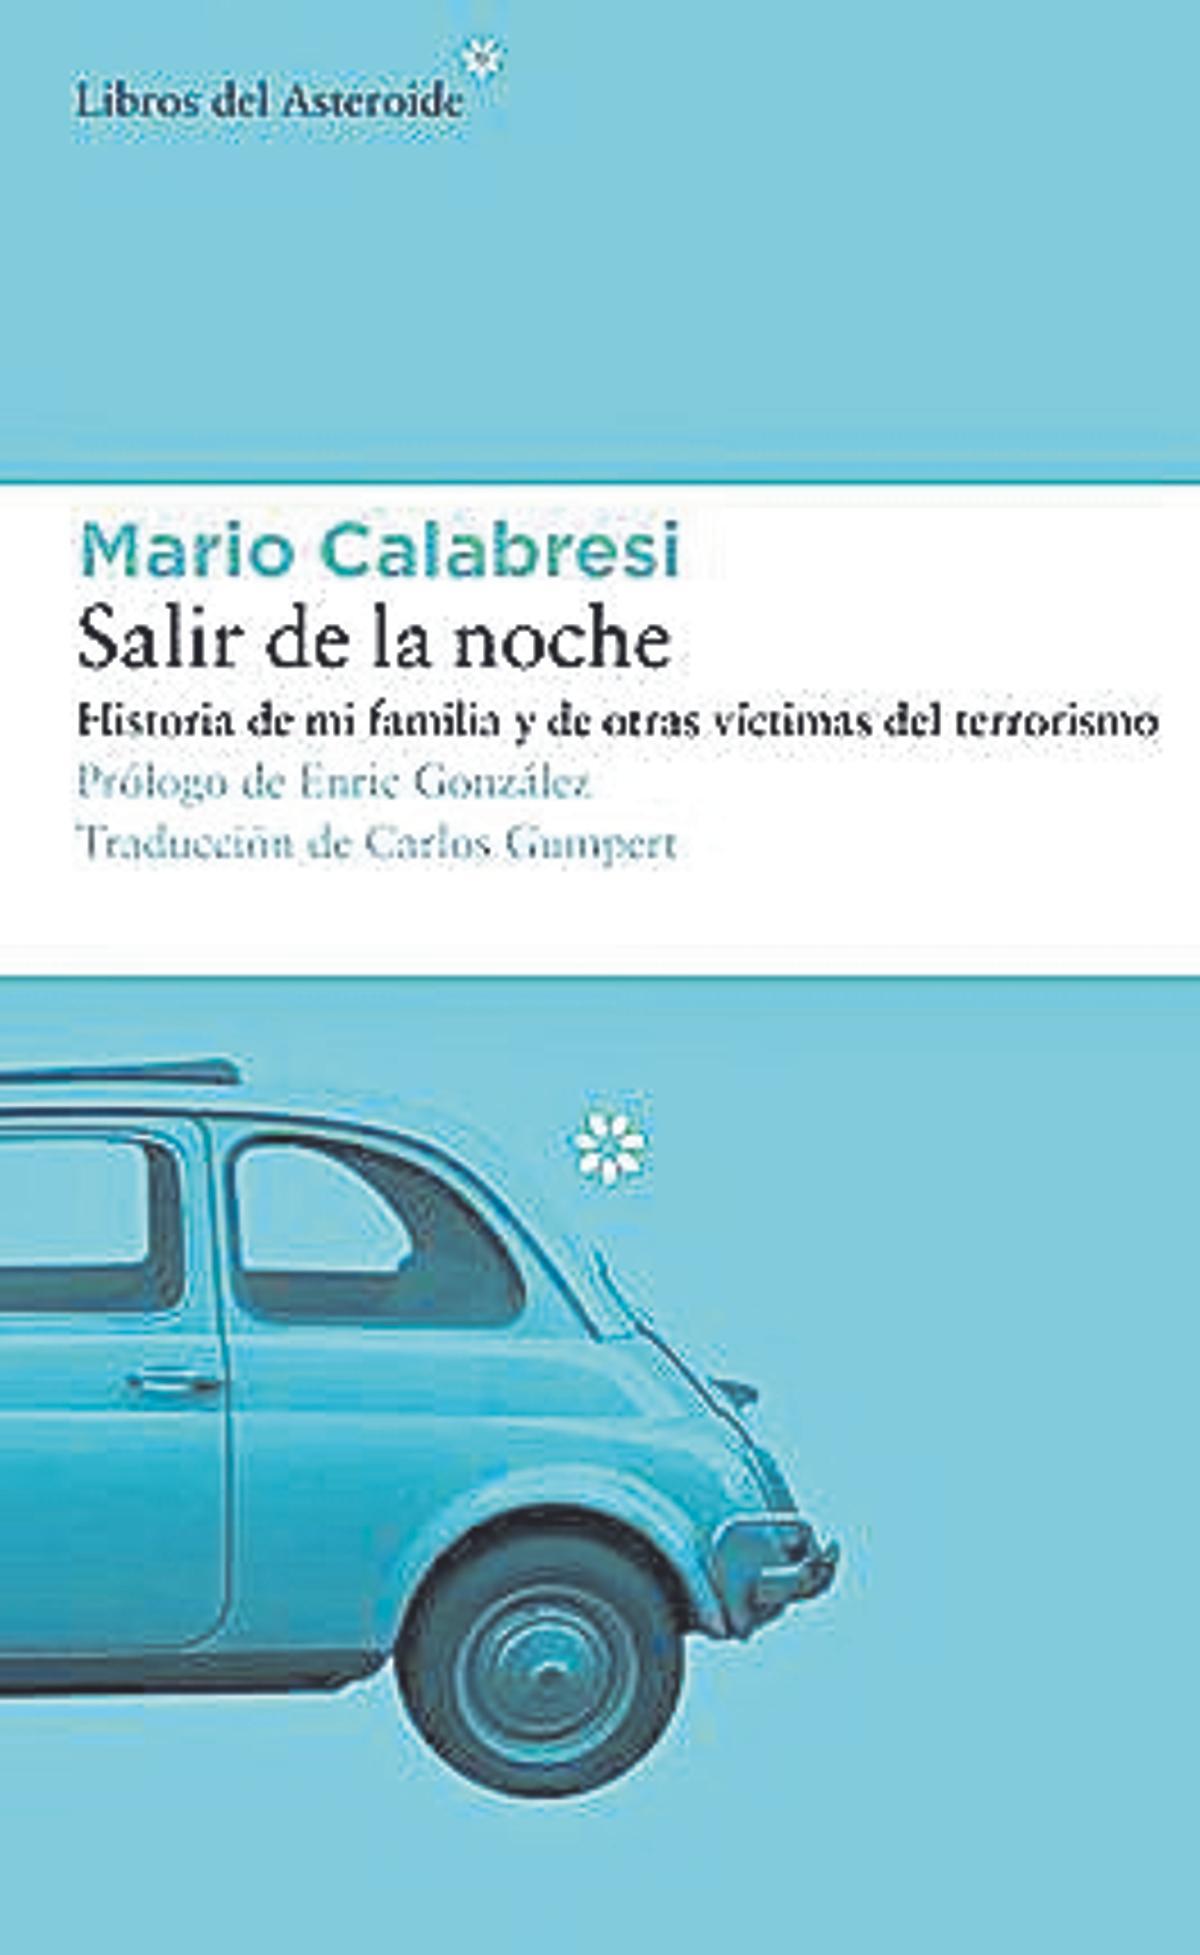 Mario Calabresi  Salir de la noche  Traducción de Enric González  Libros de Asteroide  192 páginas / 19,95 euros